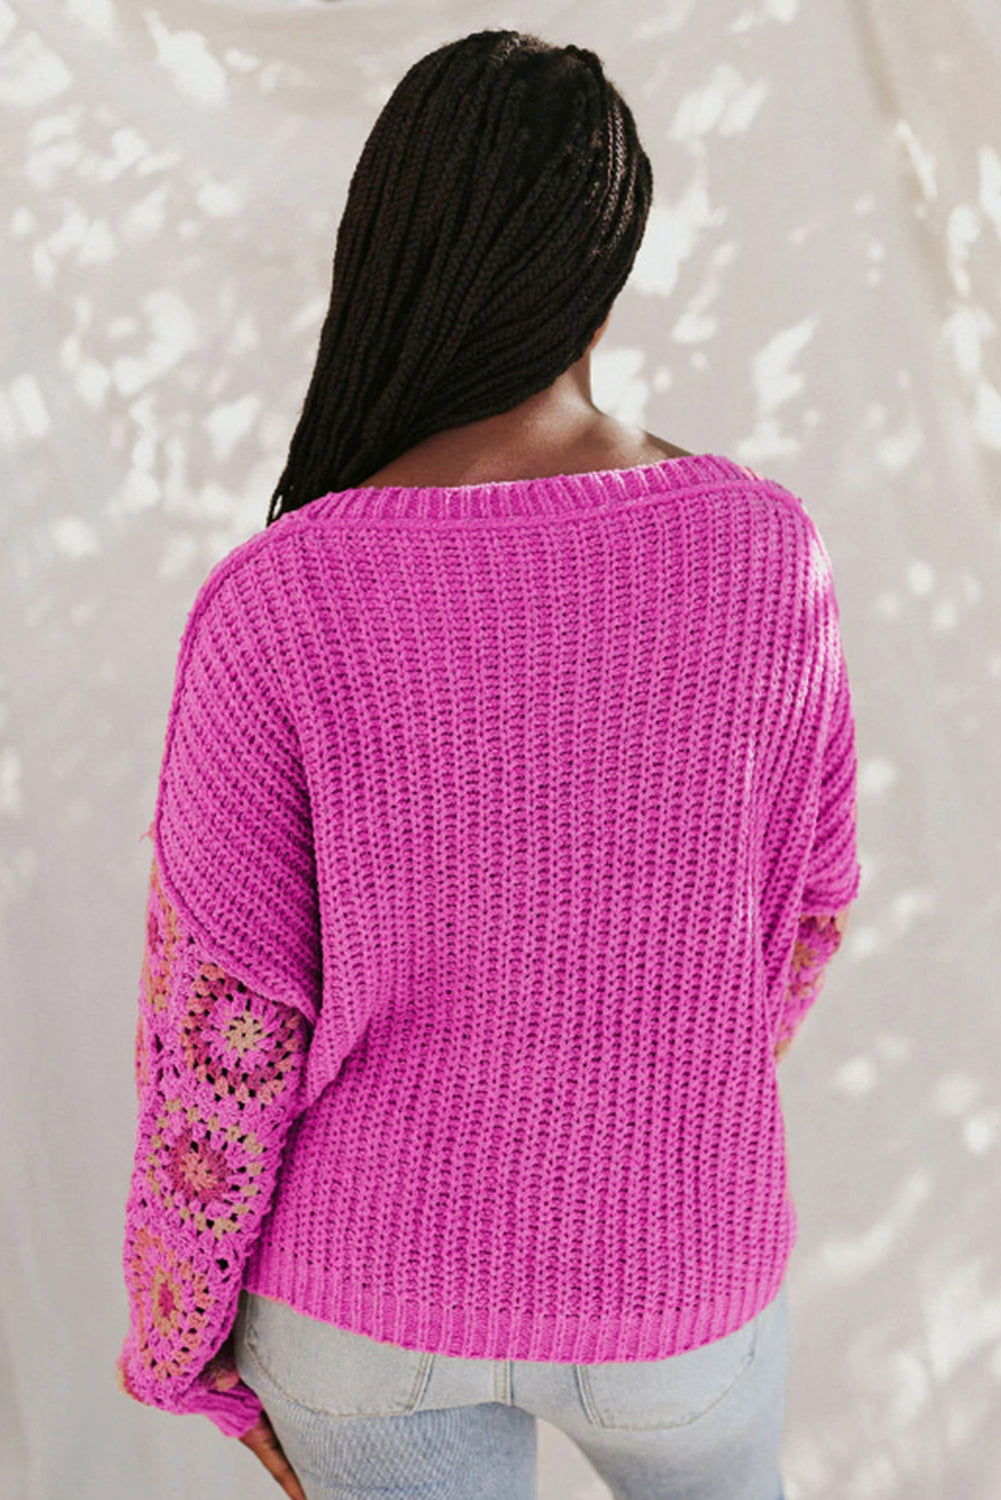 Rose Crochet Long Sleeve Knitted Pullover V Neck Sweater